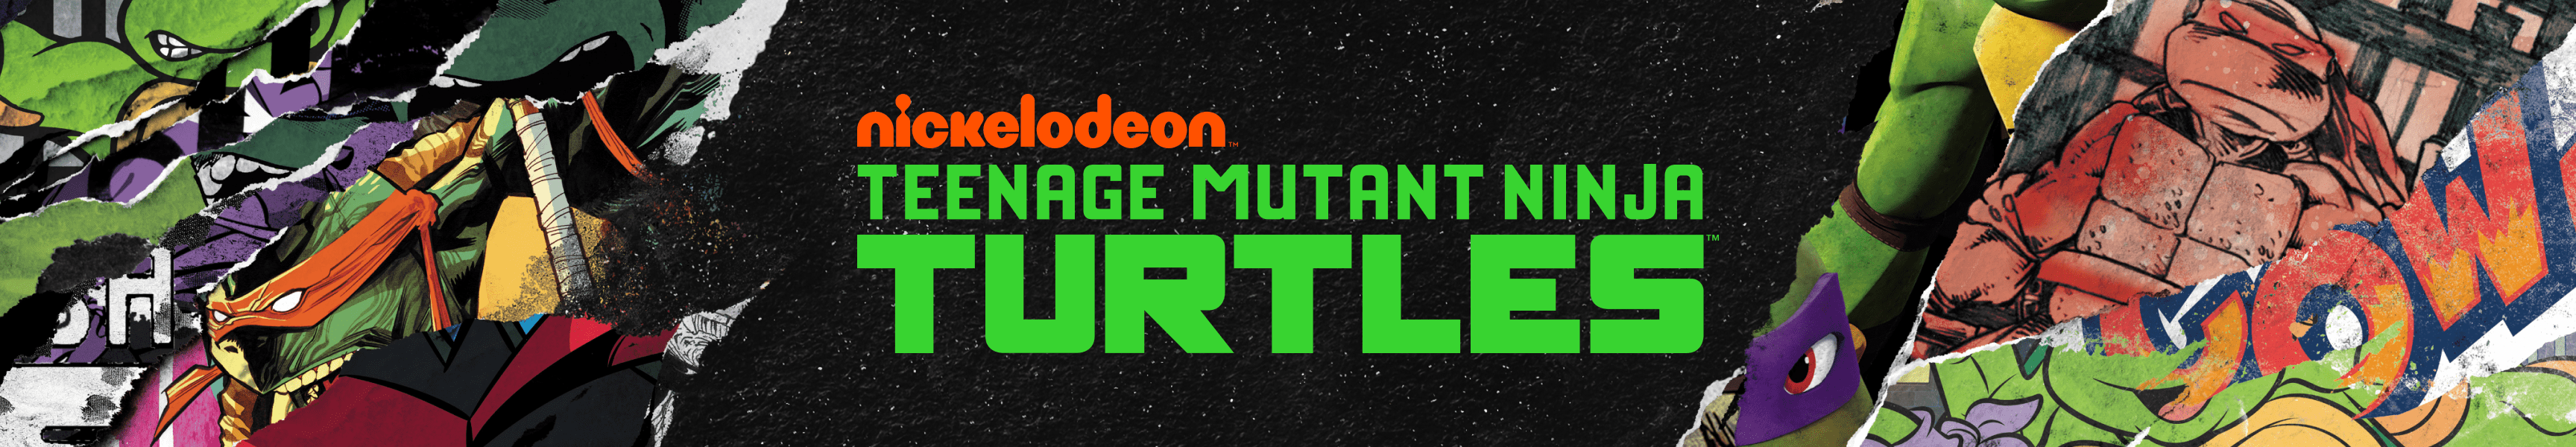 Teenage Mutant Ninja Turtles Épingles